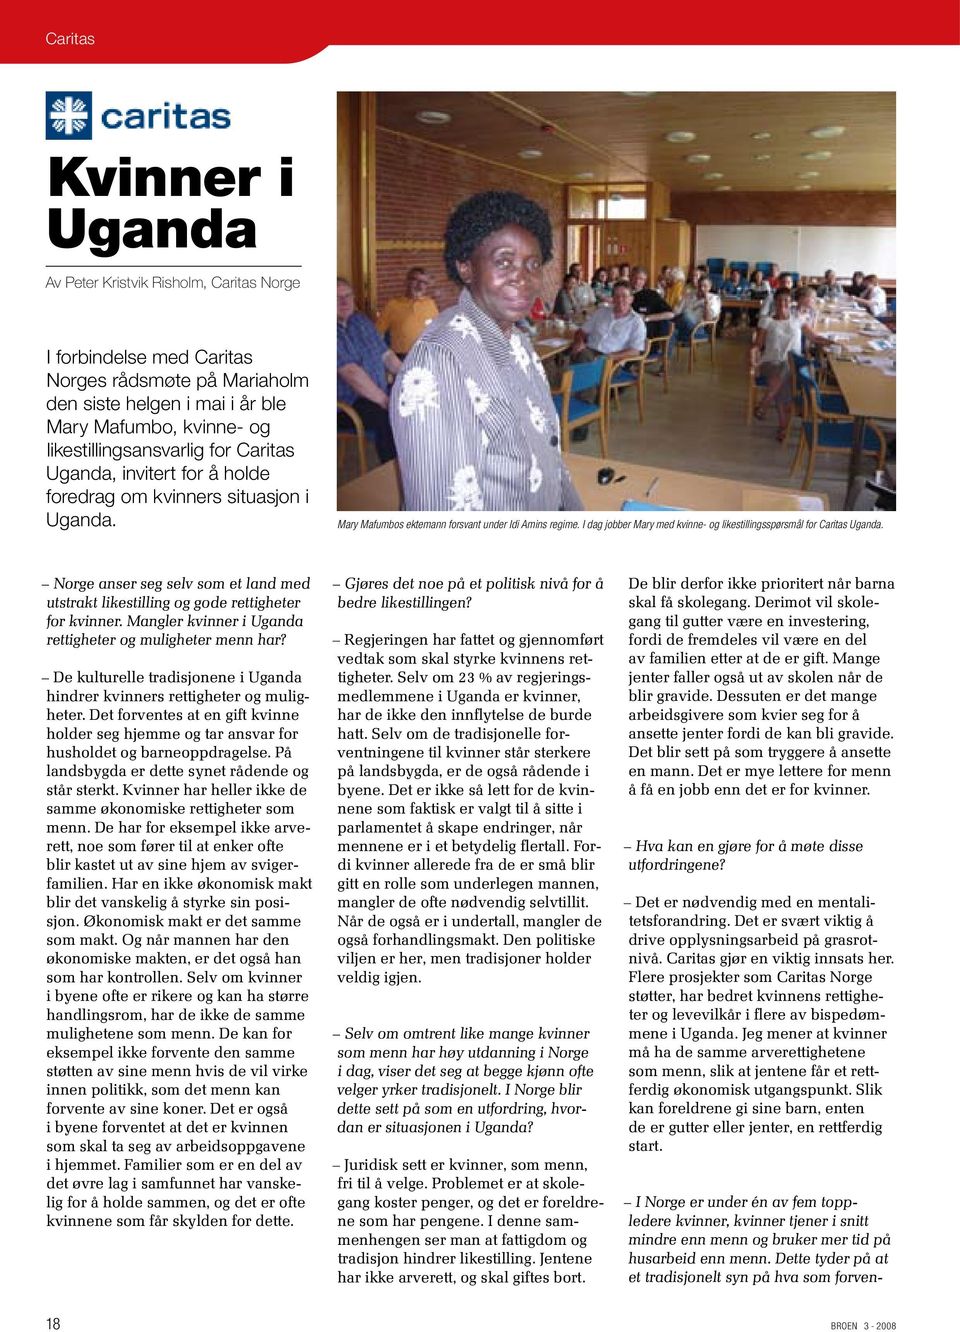 I dag jobber Mary med kvinne- og likestillingsspørsmål for Caritas Uganda. Norge anser seg selv som et land med utstrakt likestilling og gode rettigheter for kvinner.